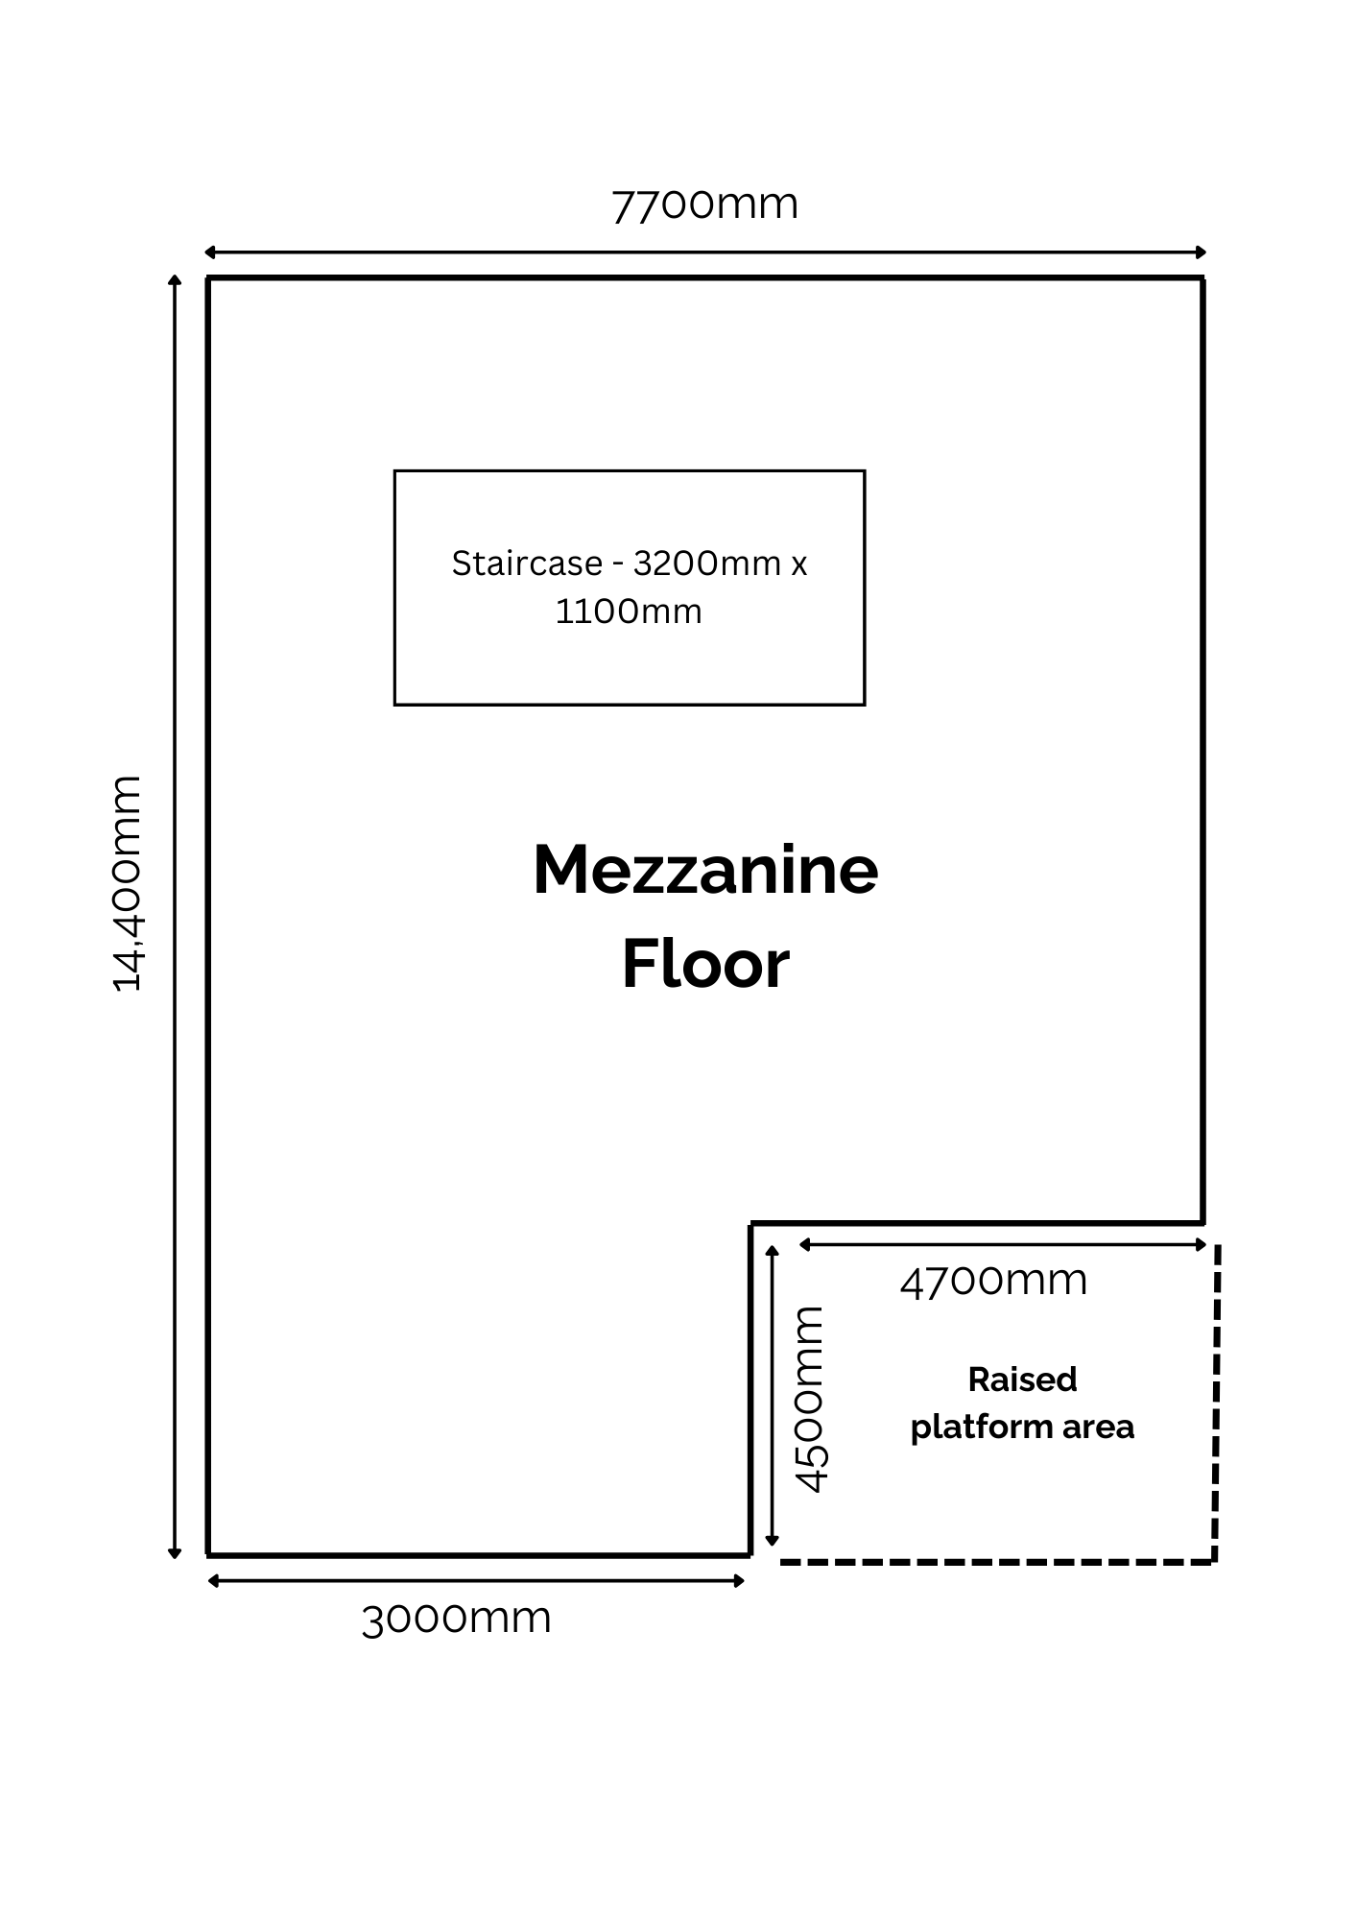 Mezzanine Floor, total floor area 14,400mm x 7700m - Image 10 of 10